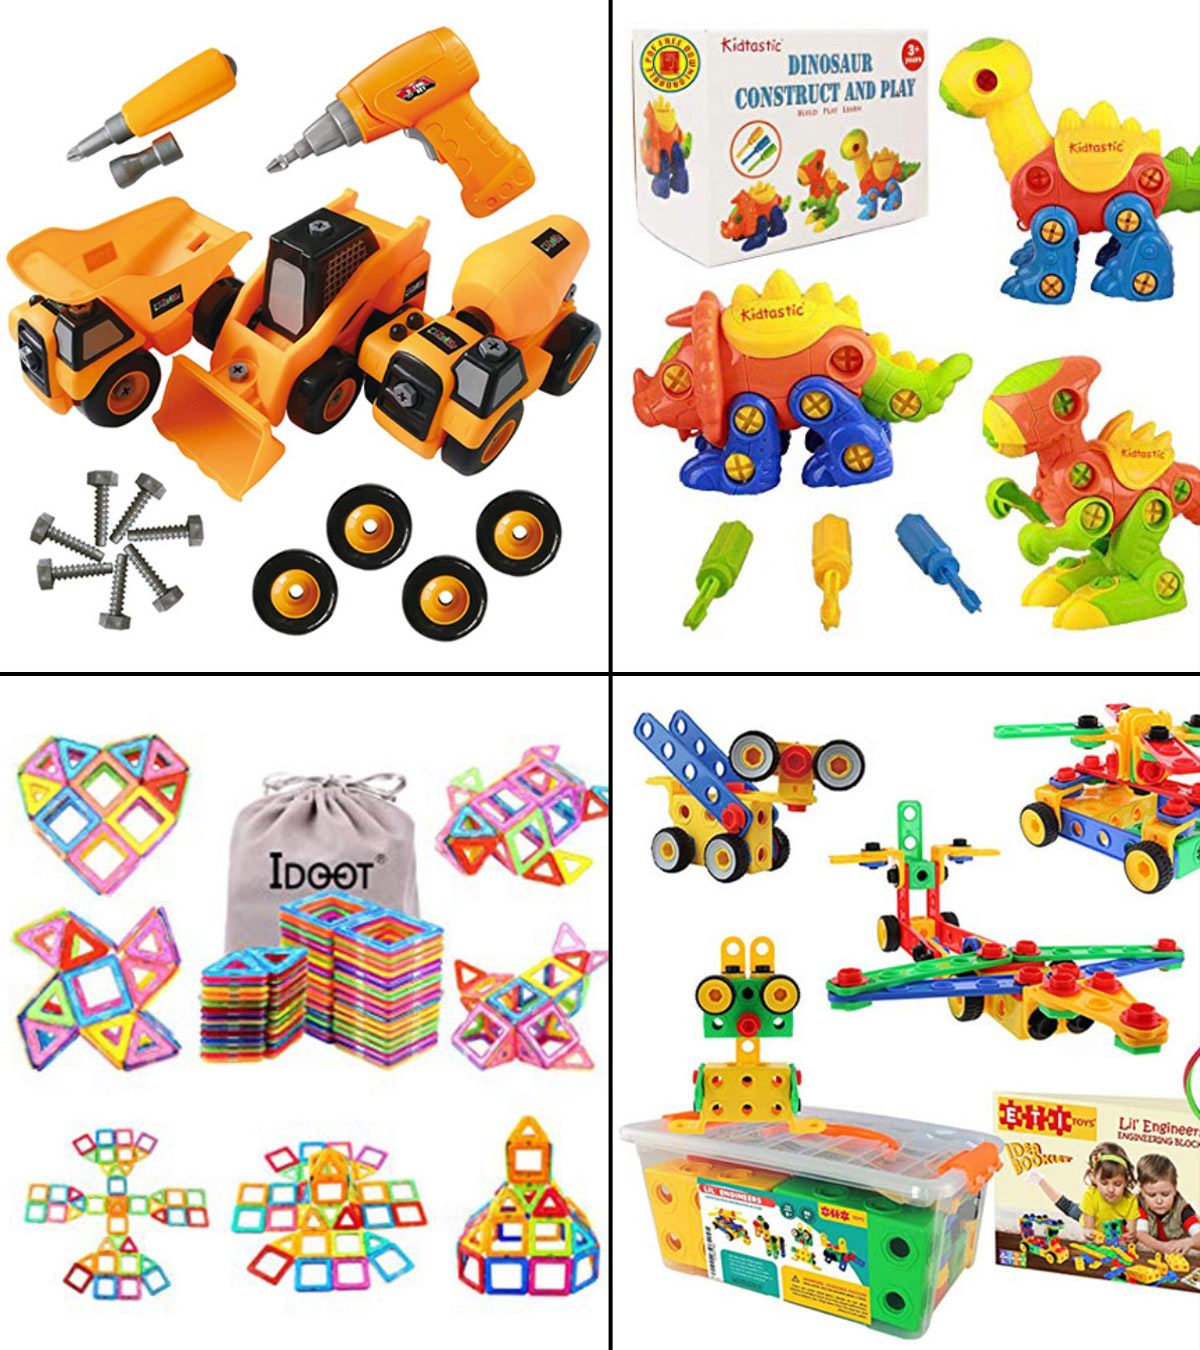 2023年让孩子们变得有创造力的12个最佳建筑套装玩具